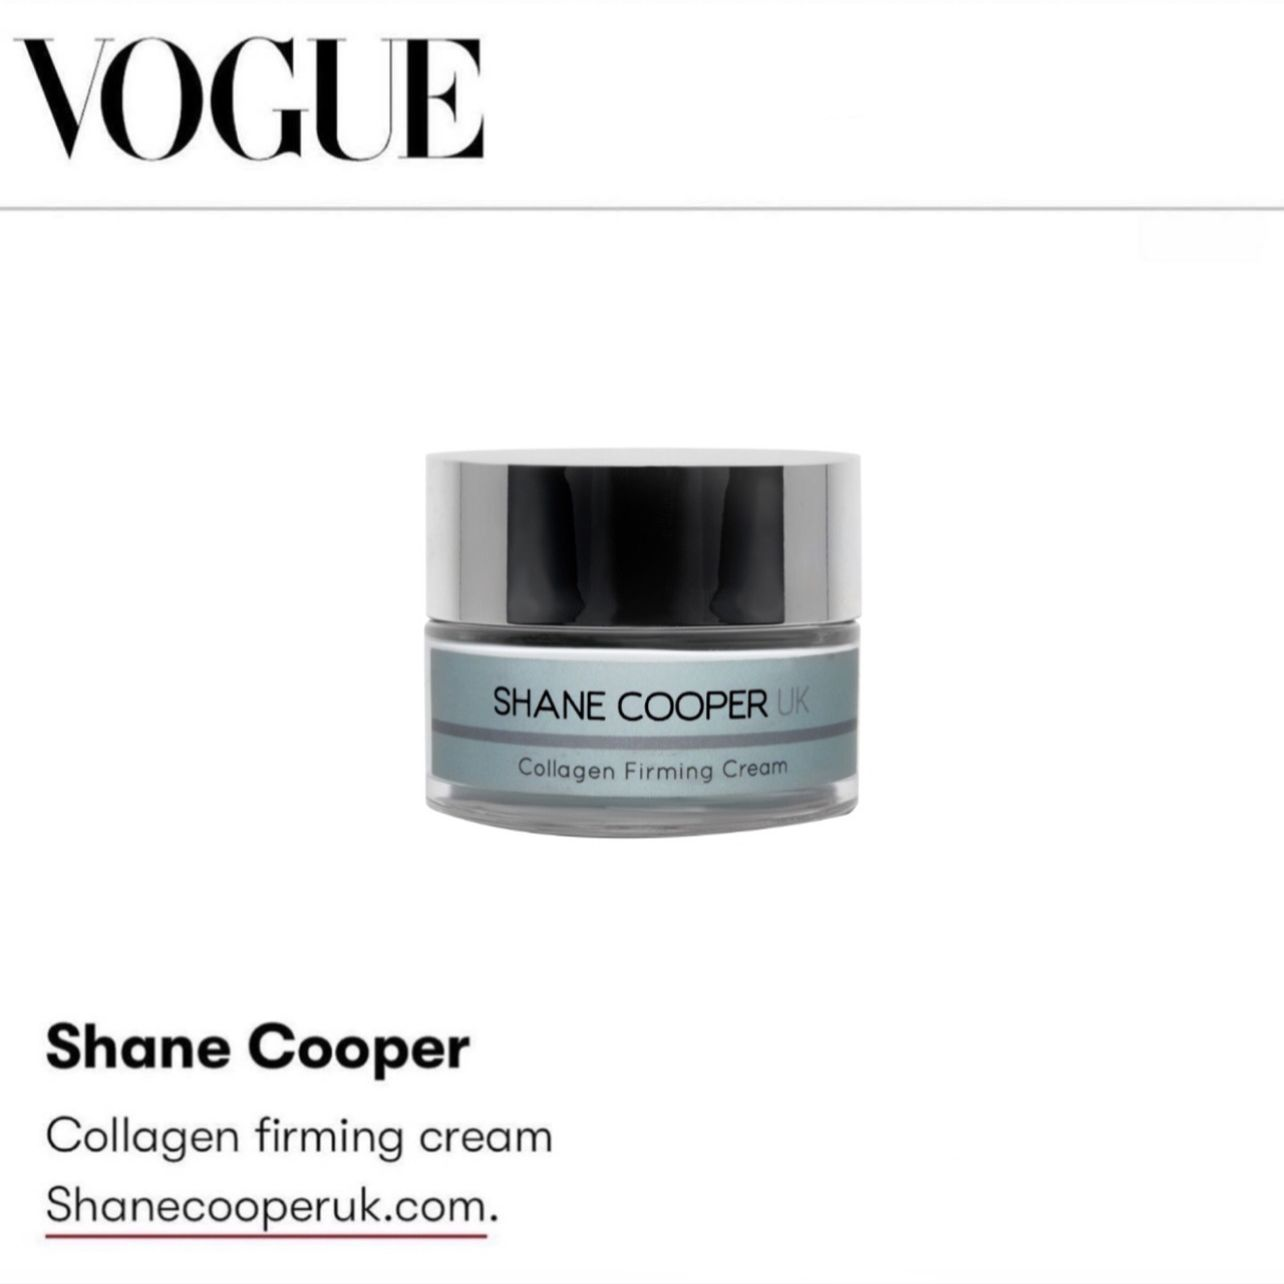 Shane Cooper Collagen Firming Cream featured on Vogue.